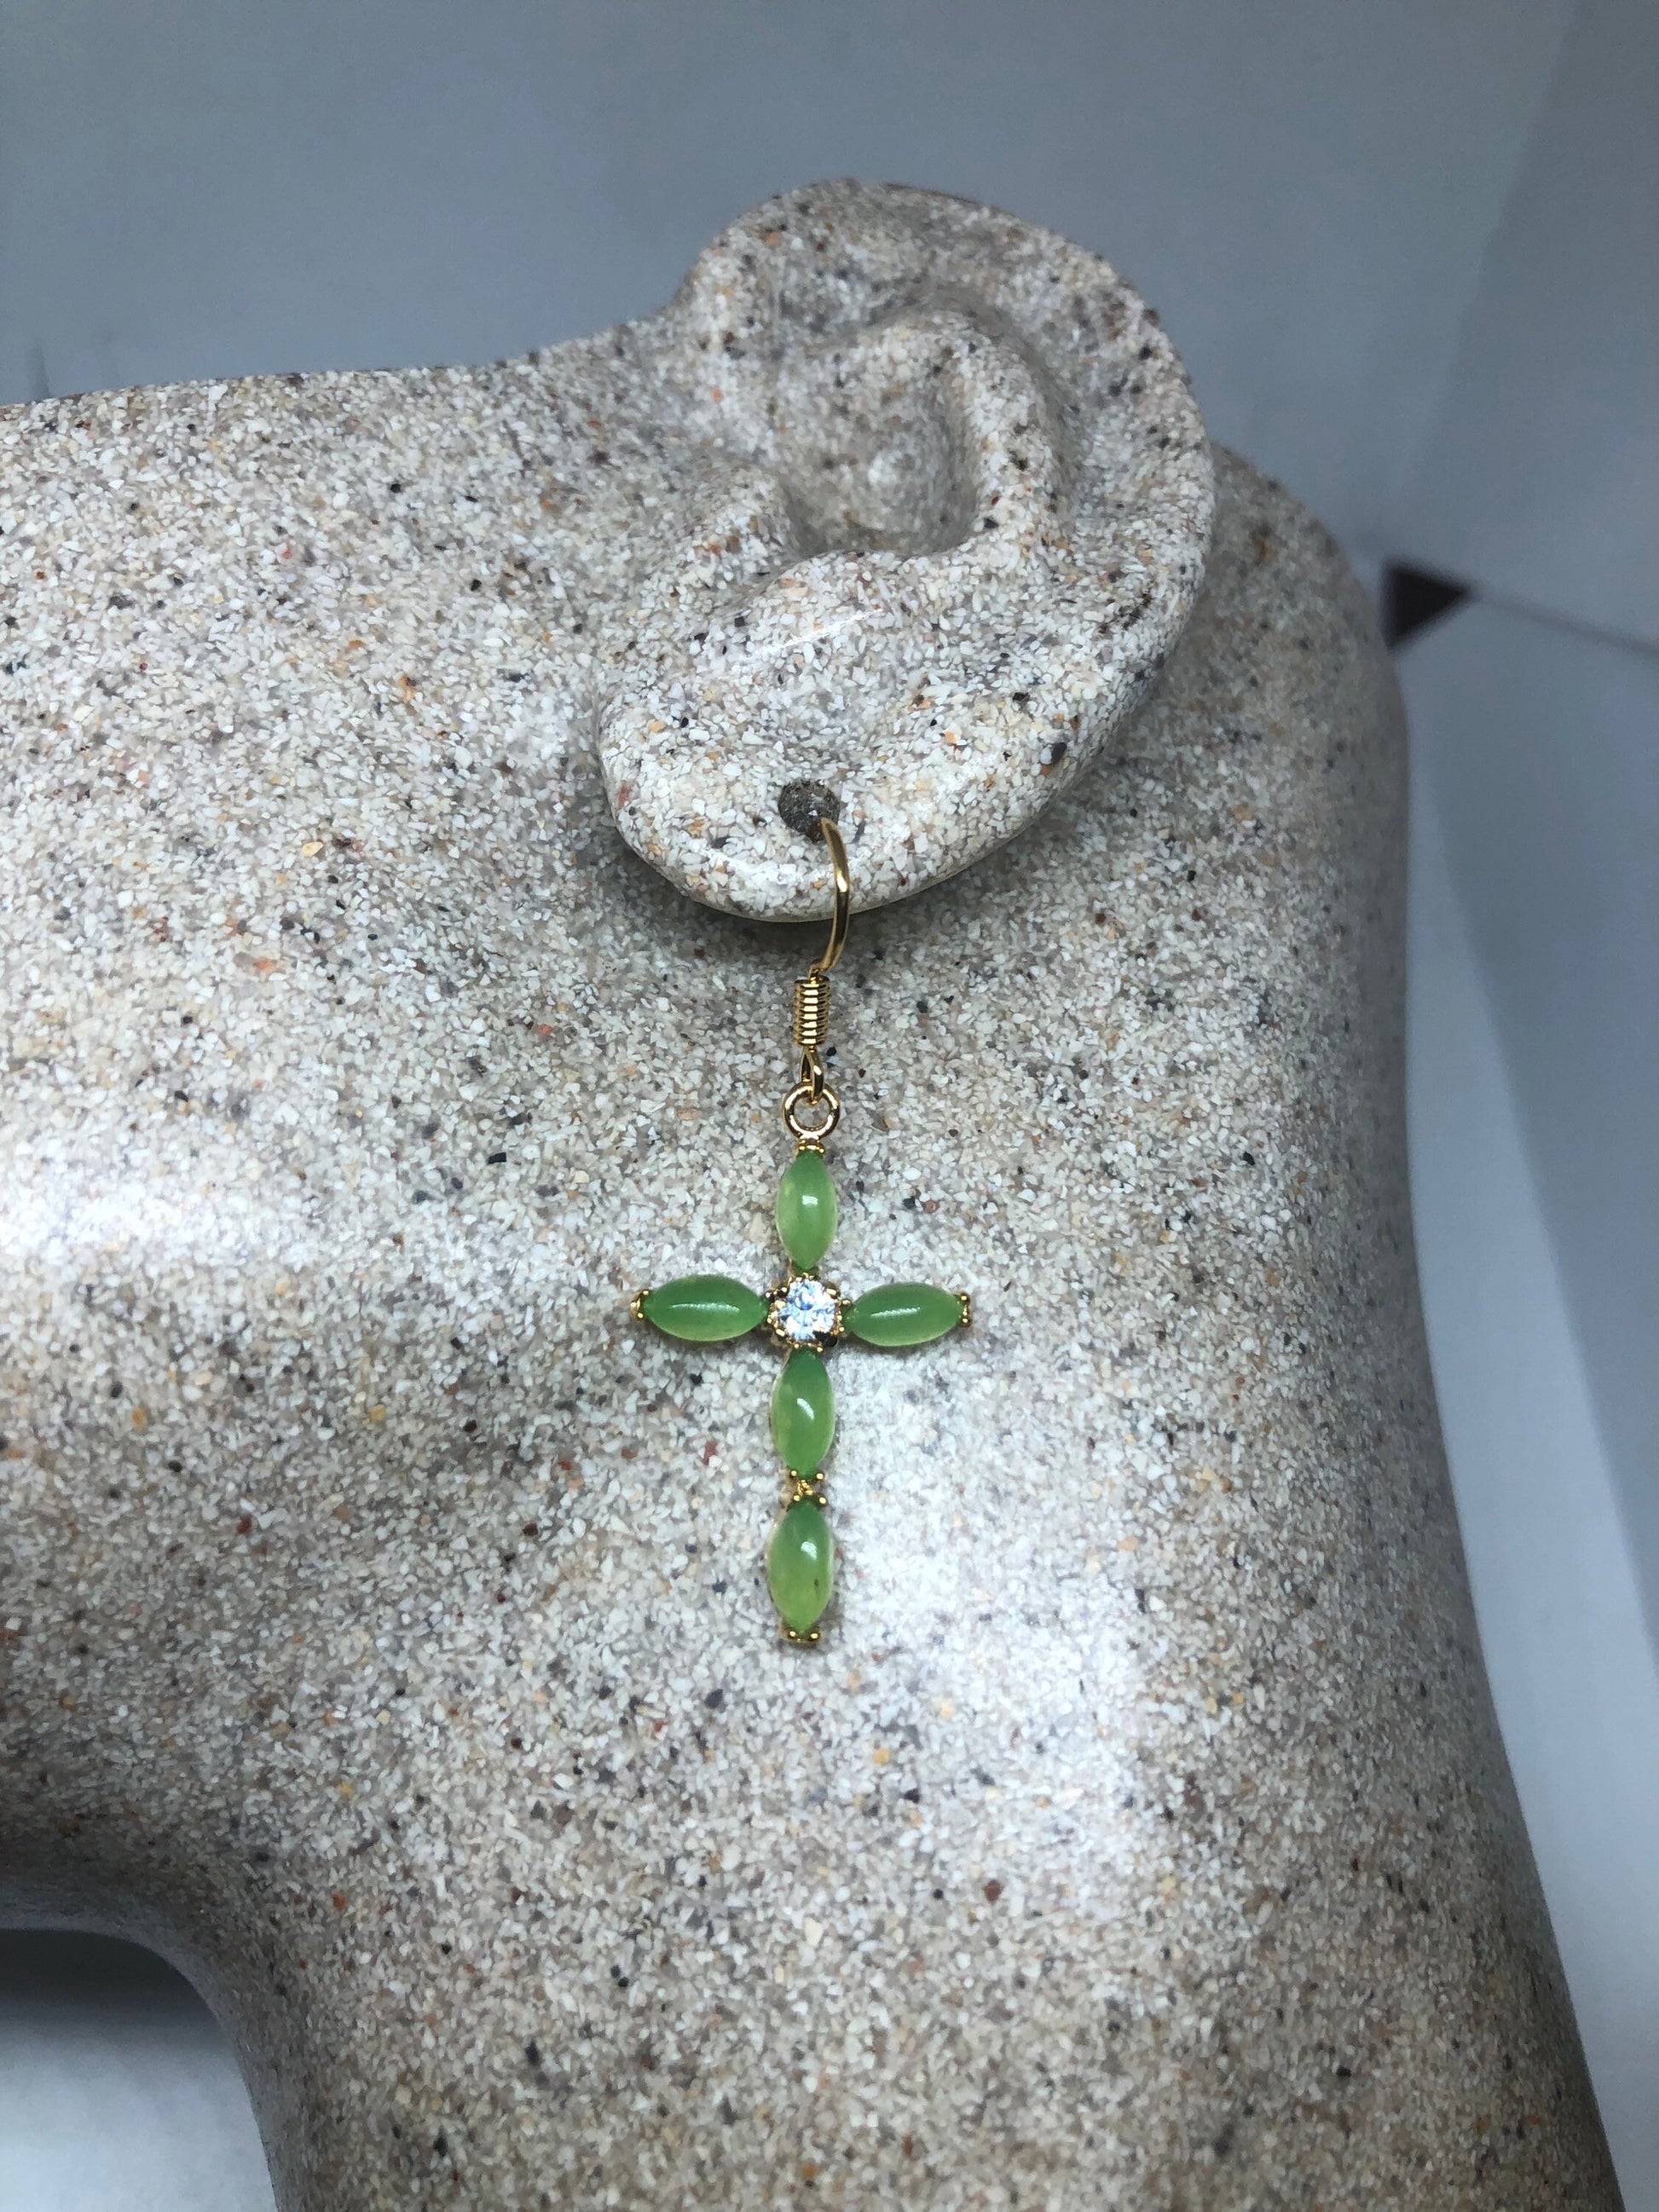 Vintage Gemstone Cross Earrings - Fun Green Jade Silver